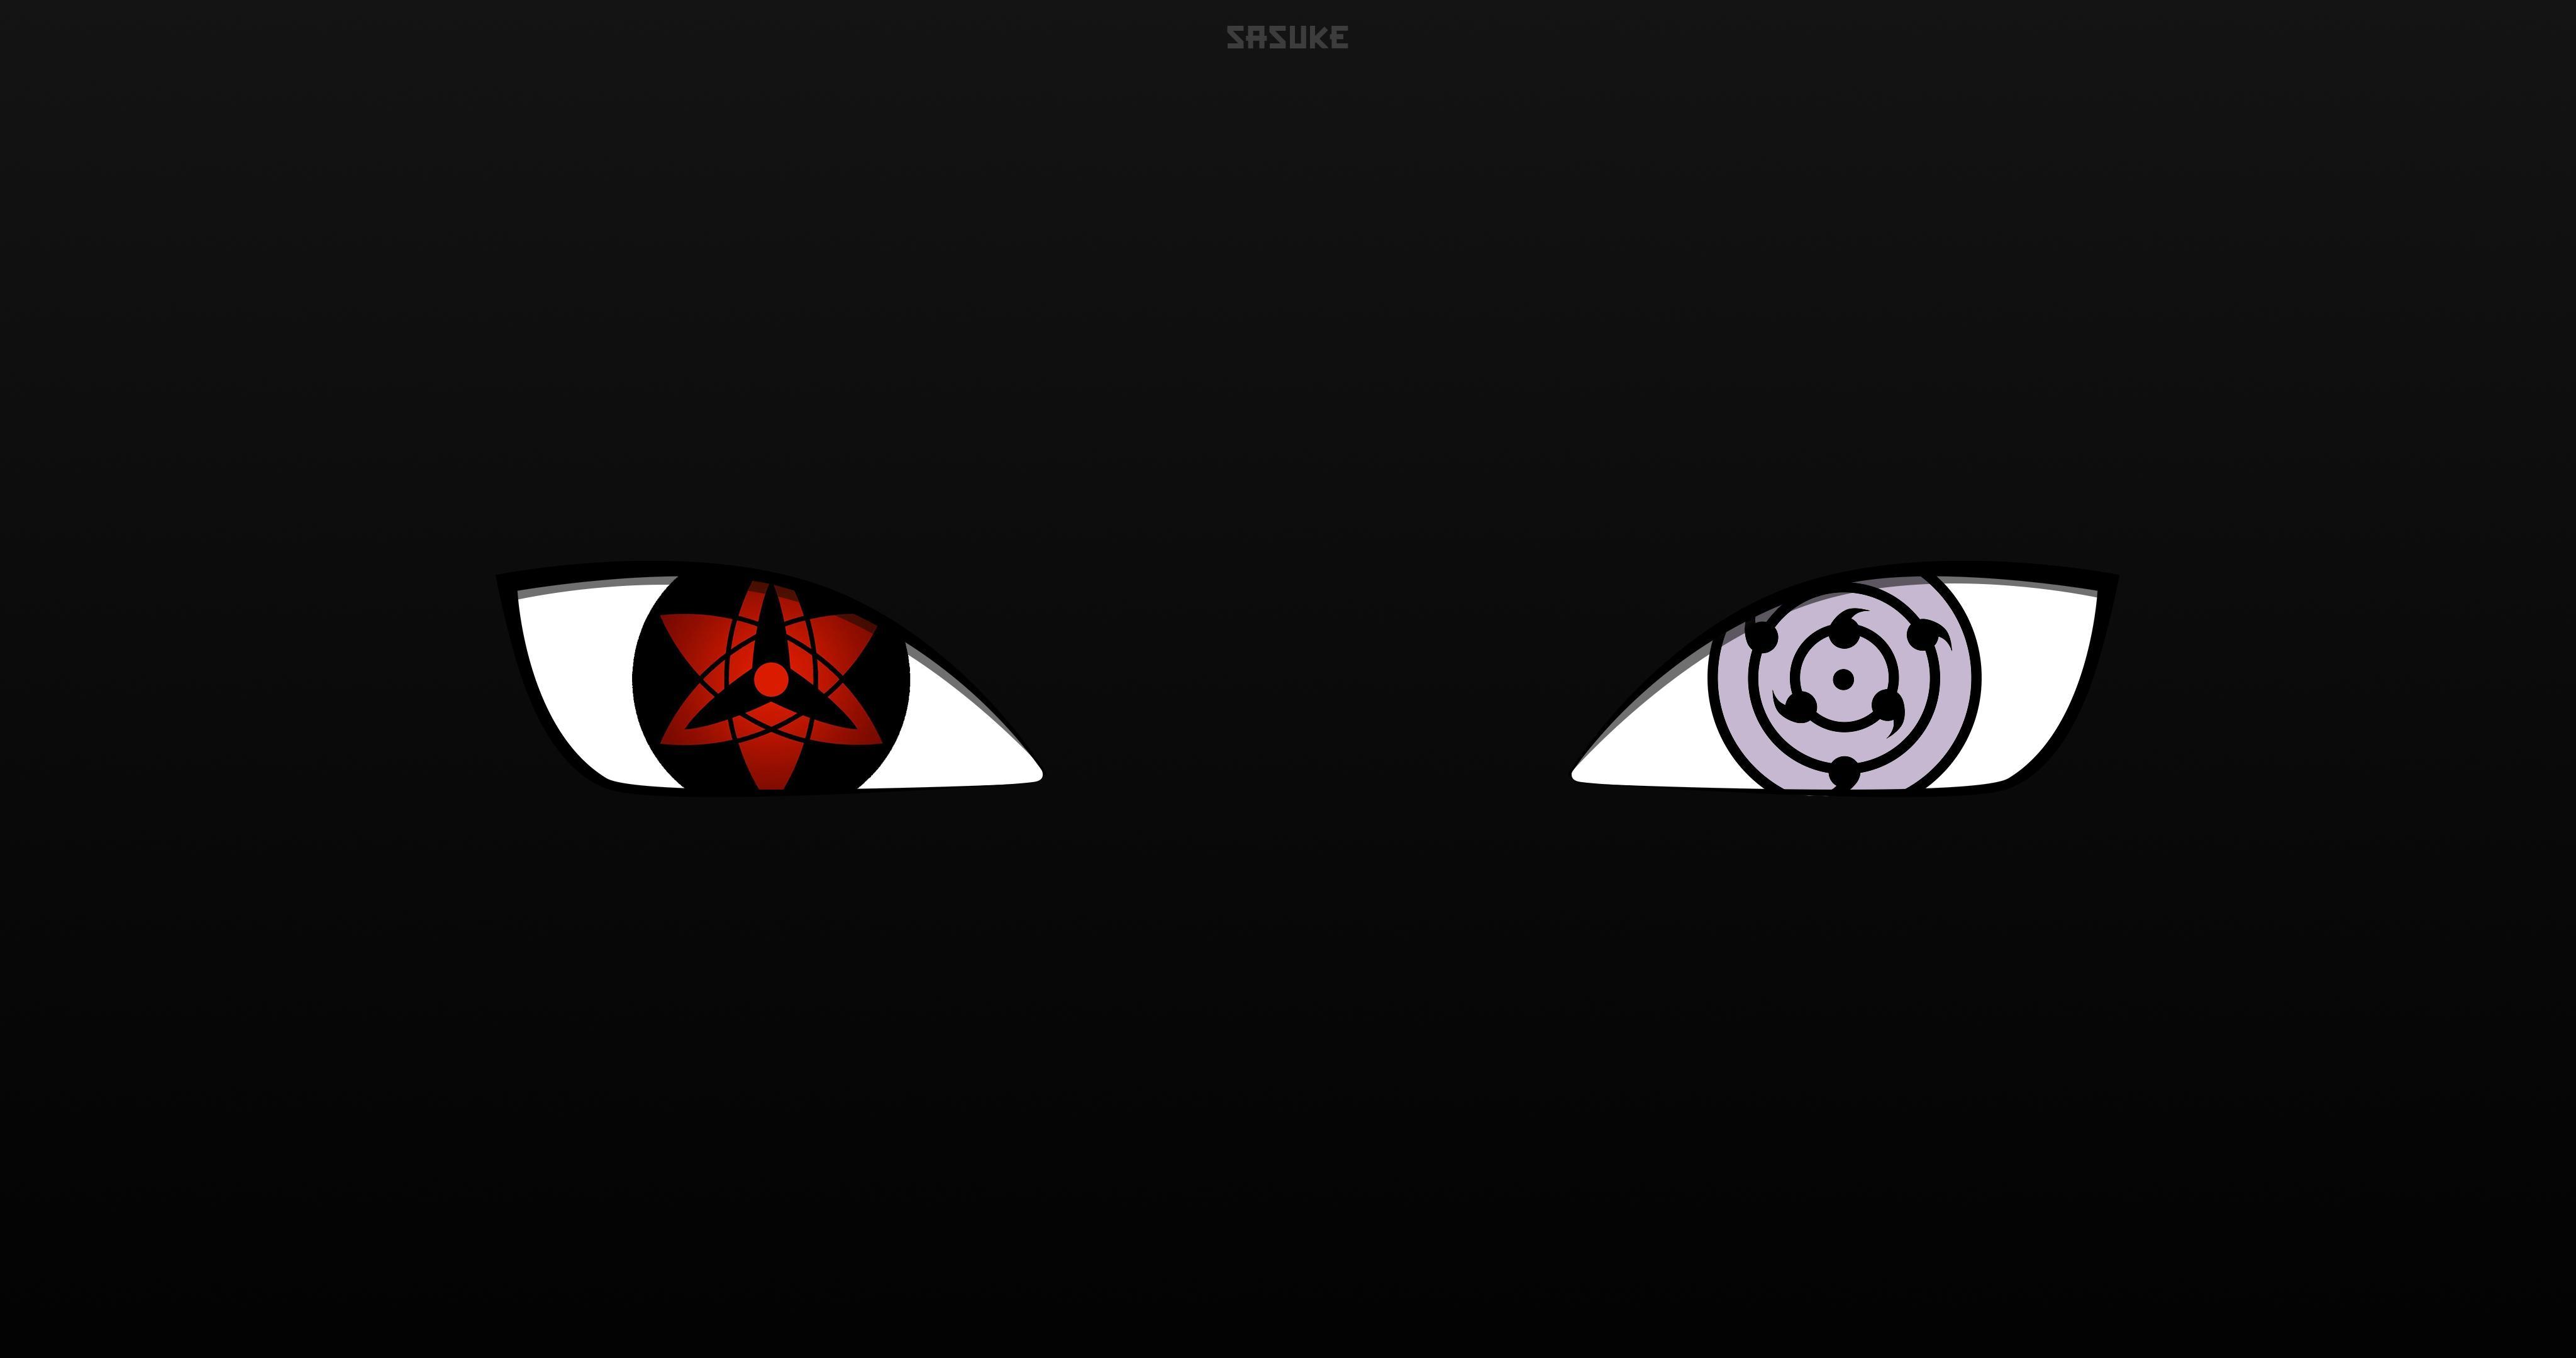 Sasuke Eyes Wallpapers - Top Free Sasuke Eyes Backgrounds - Wallpaperaccess